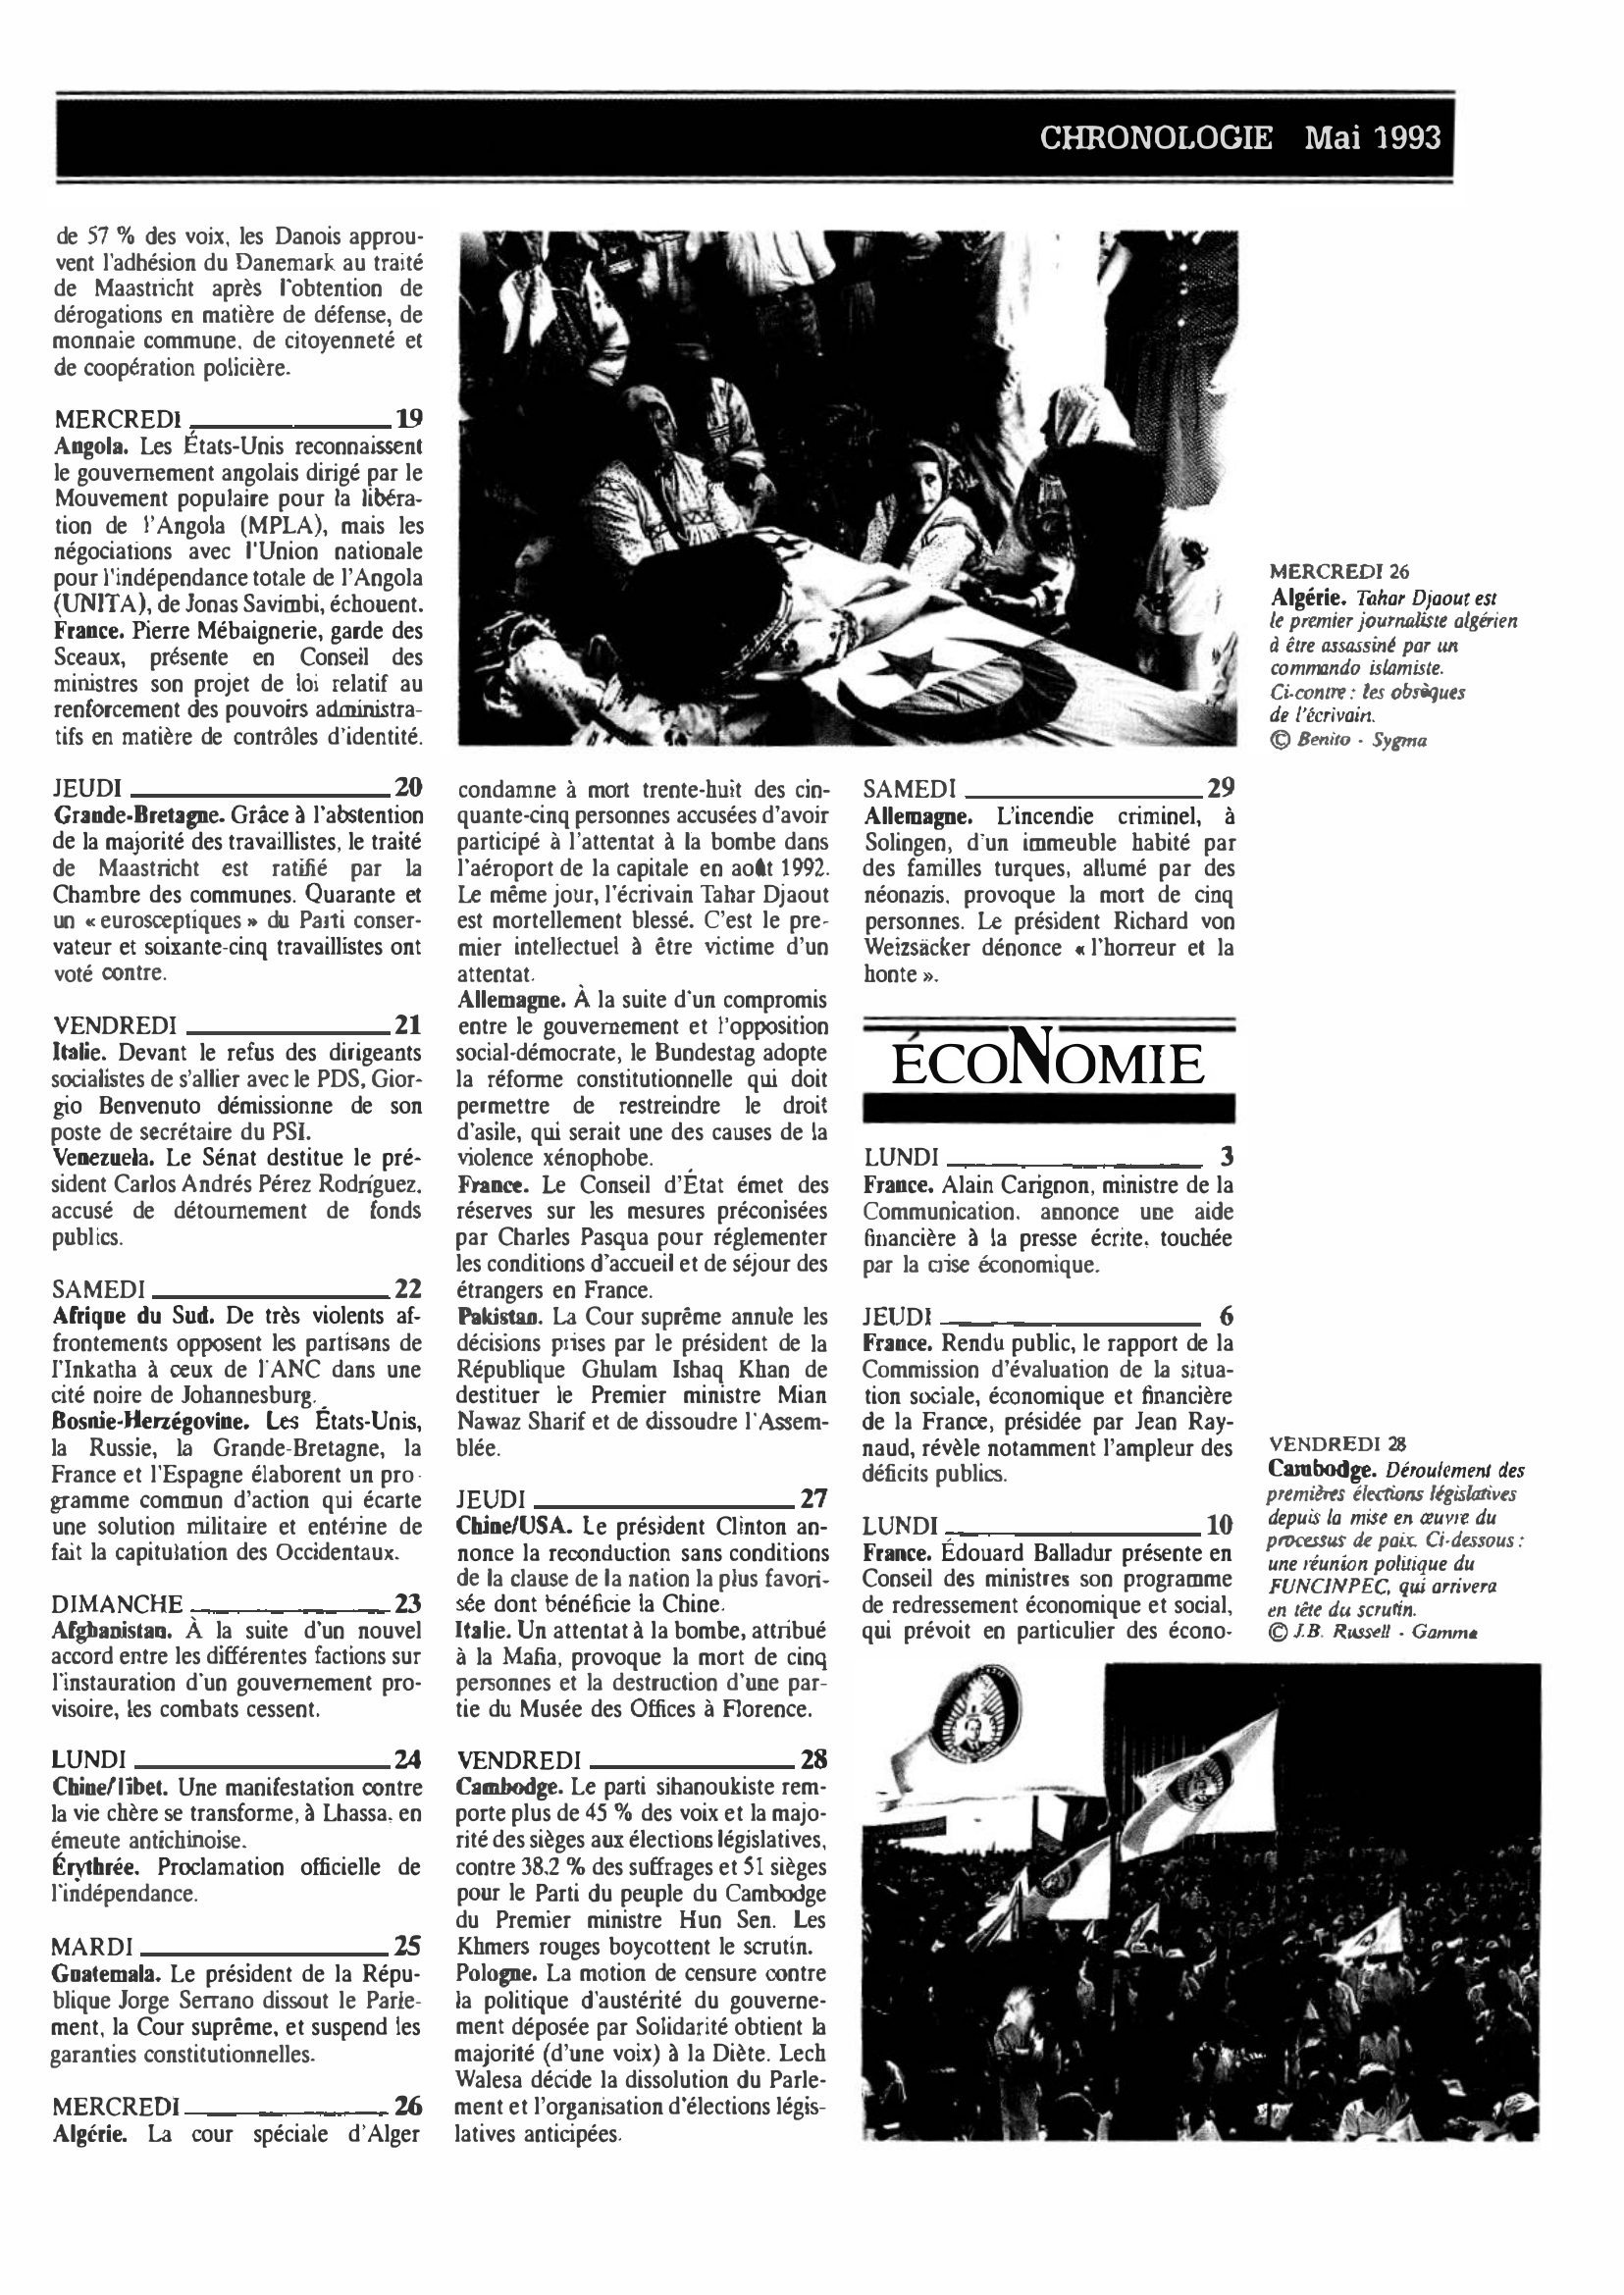 Prévisualisation du document CHRONOLOGIE Mai 1993 dans le monde (histoire chronologique)